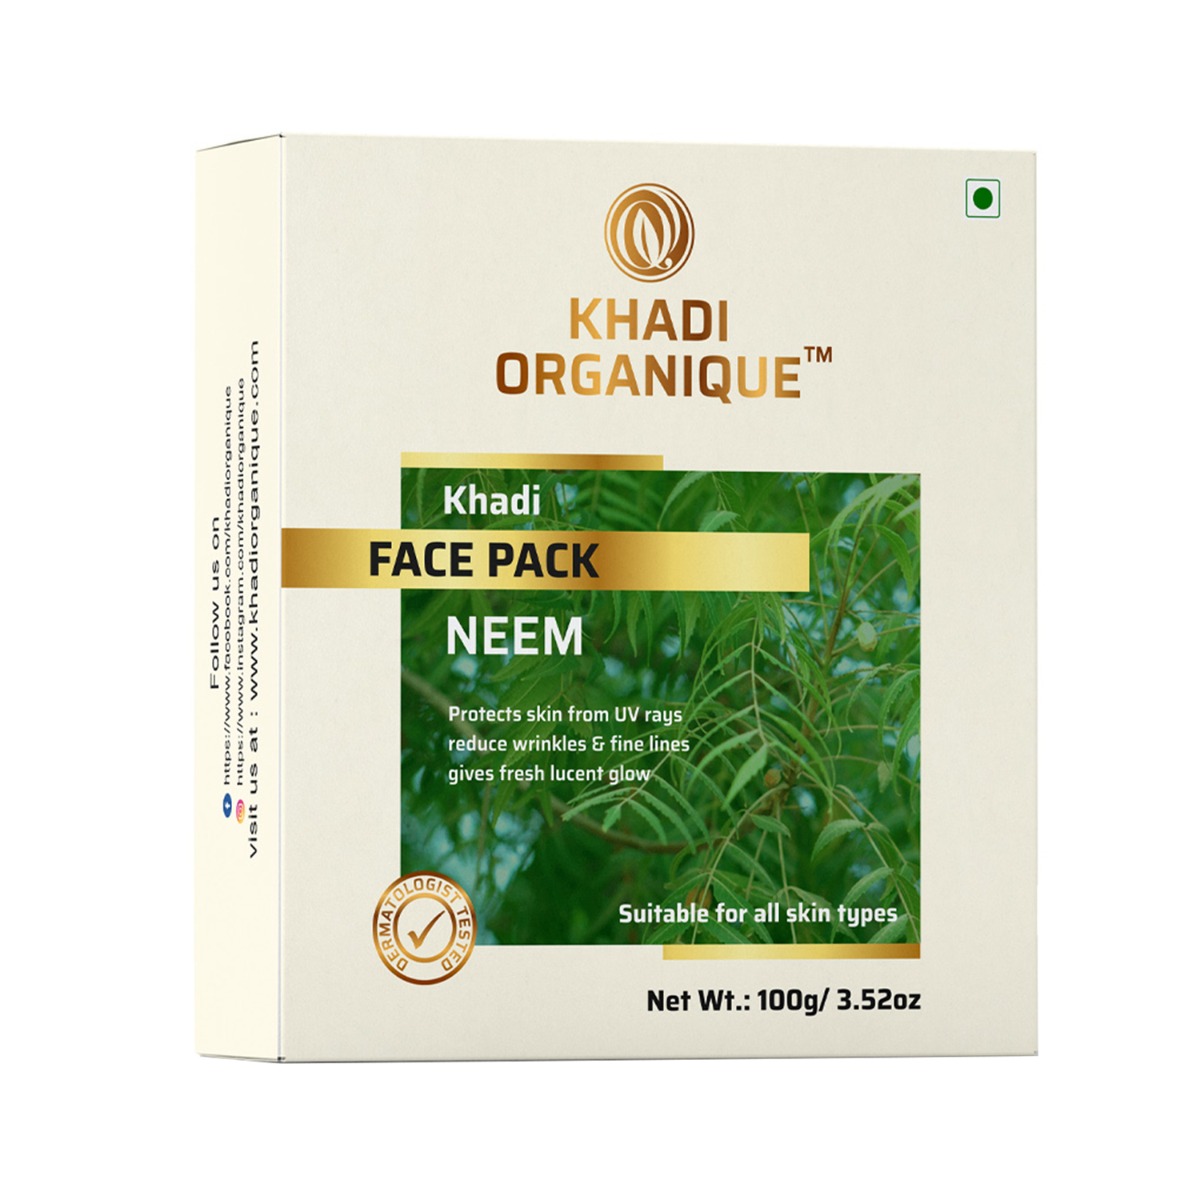 Khadi Organique Neem Face Pack, 100gm